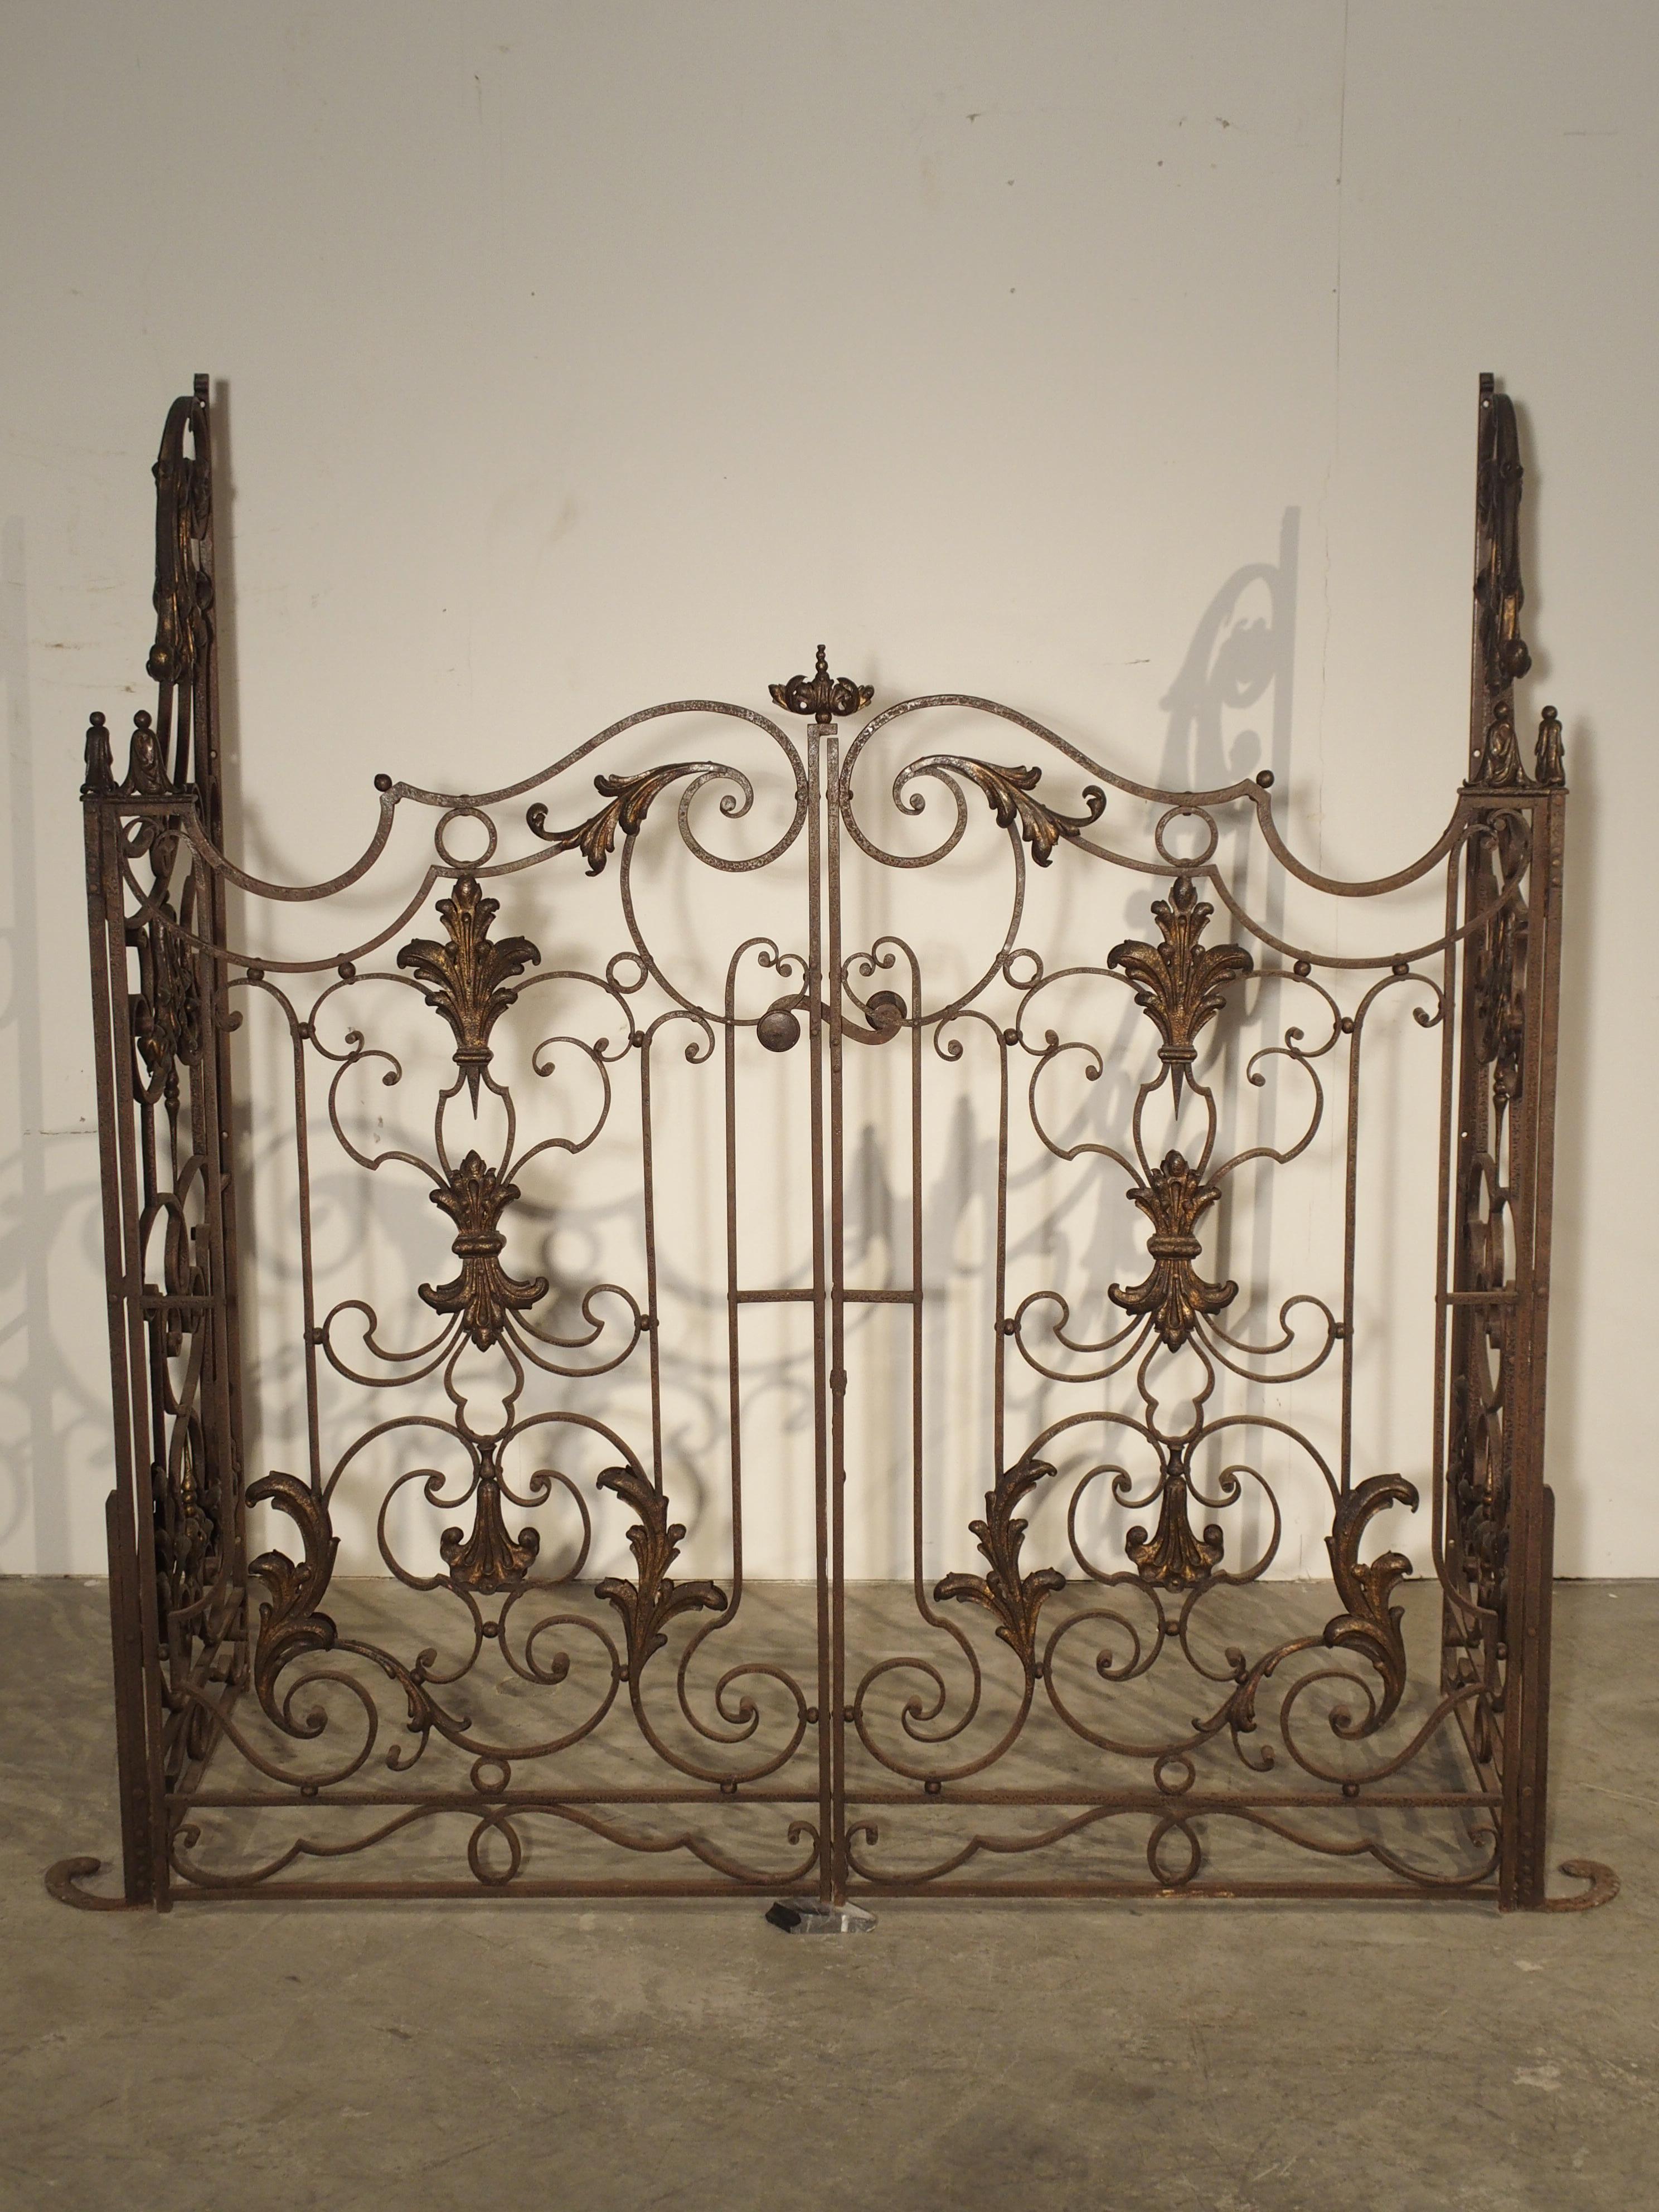 Gilt Pair of circa 1800 French Wrought Iron Gates